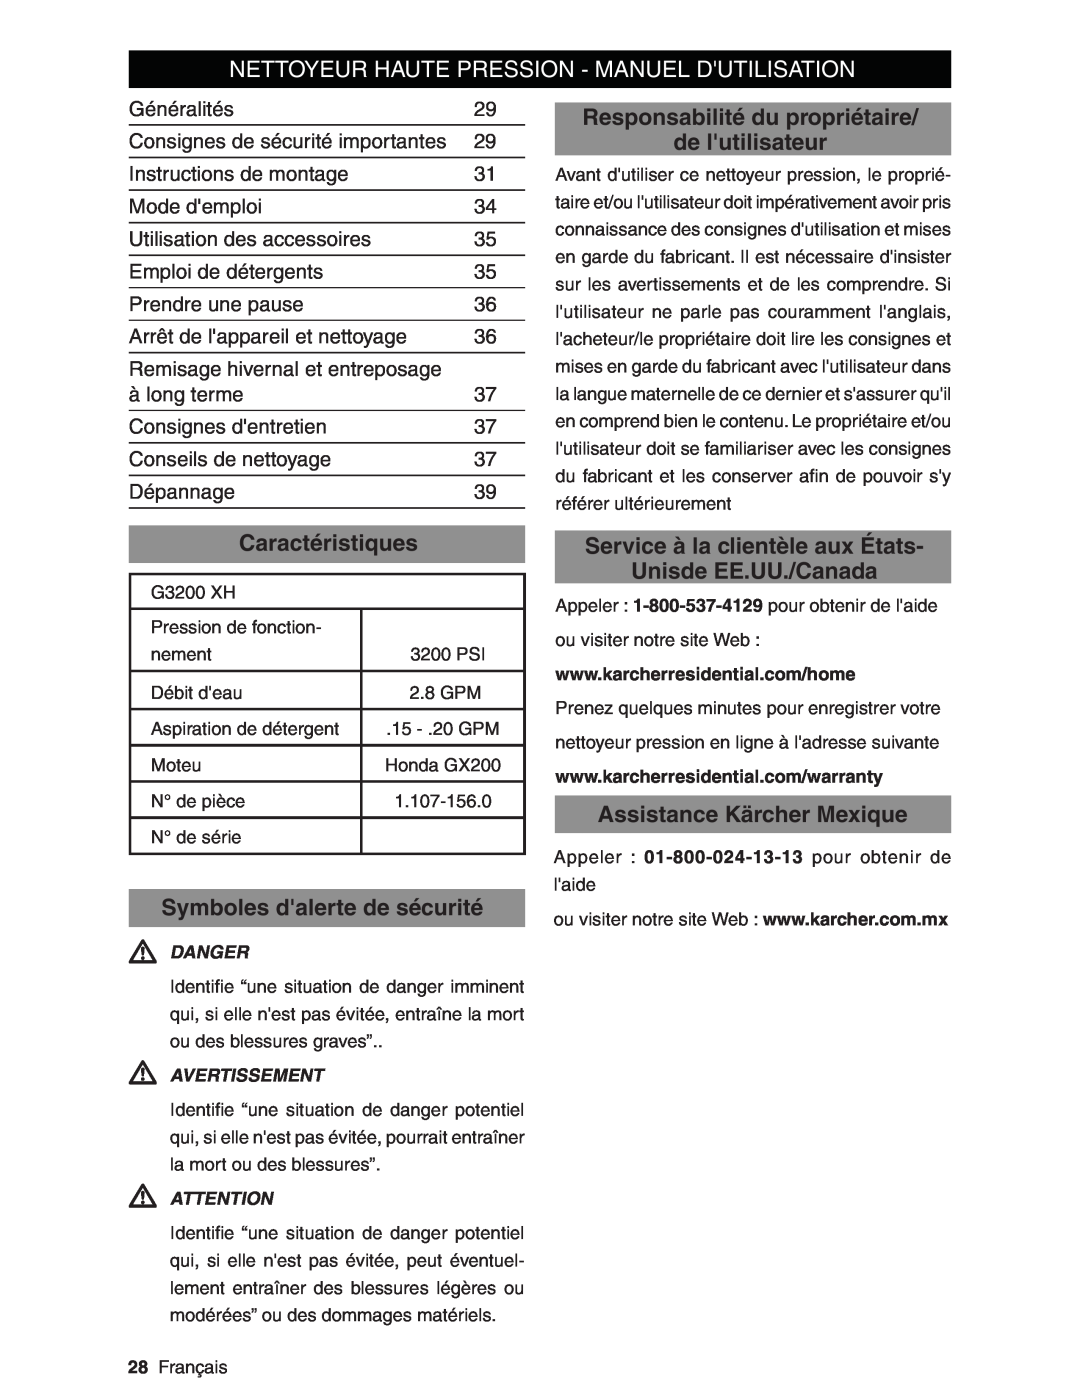 Karcher G3200XH manual Nettoyeur Haute Pression - Manuel Dutilisation, Responsabilité du propriétaire de lutilisateur 